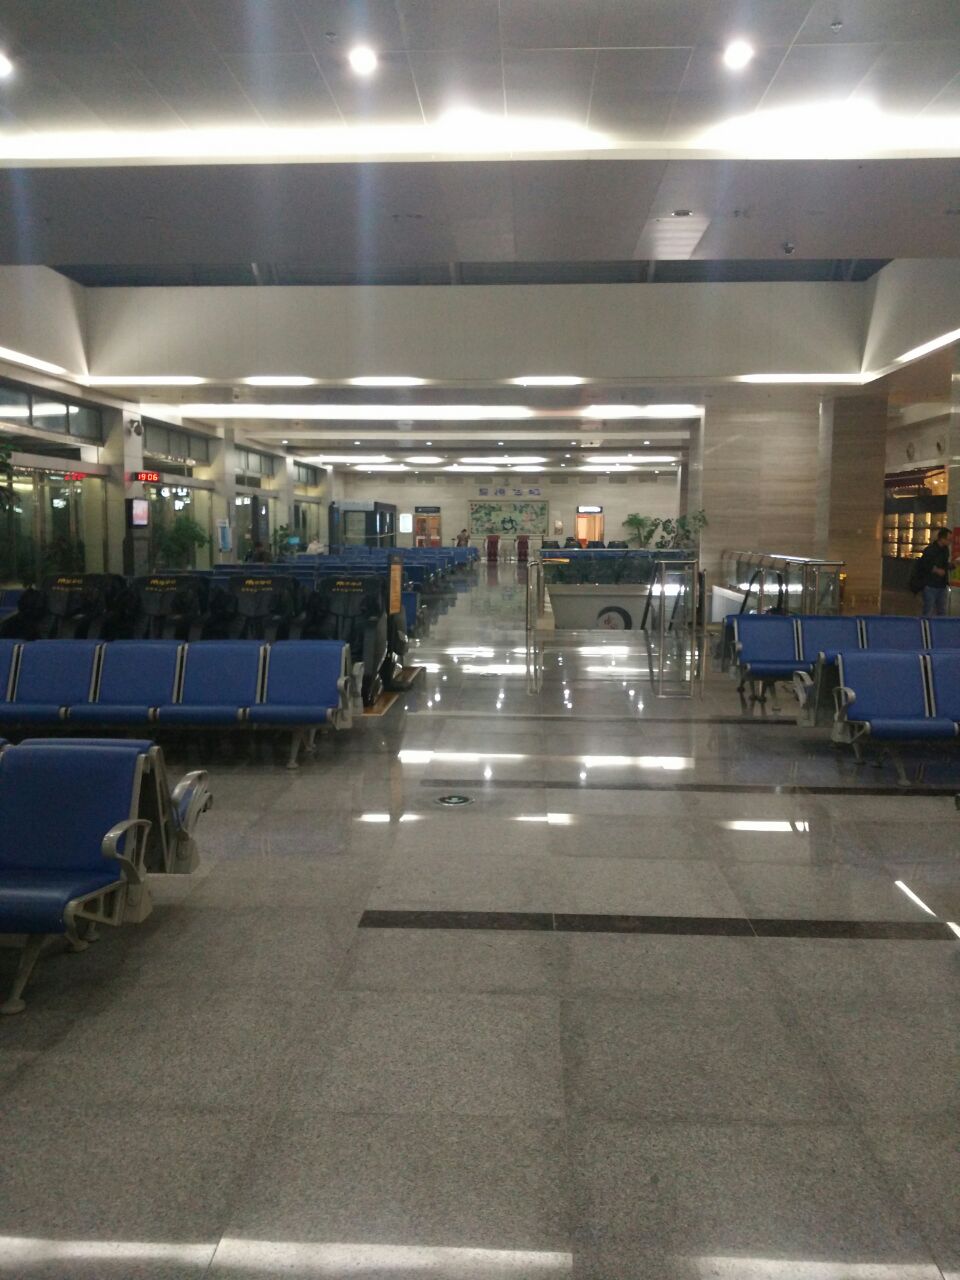 景德镇罗家机场规模很小,二层楼只有3个登机口,飞北京的航班没见过准